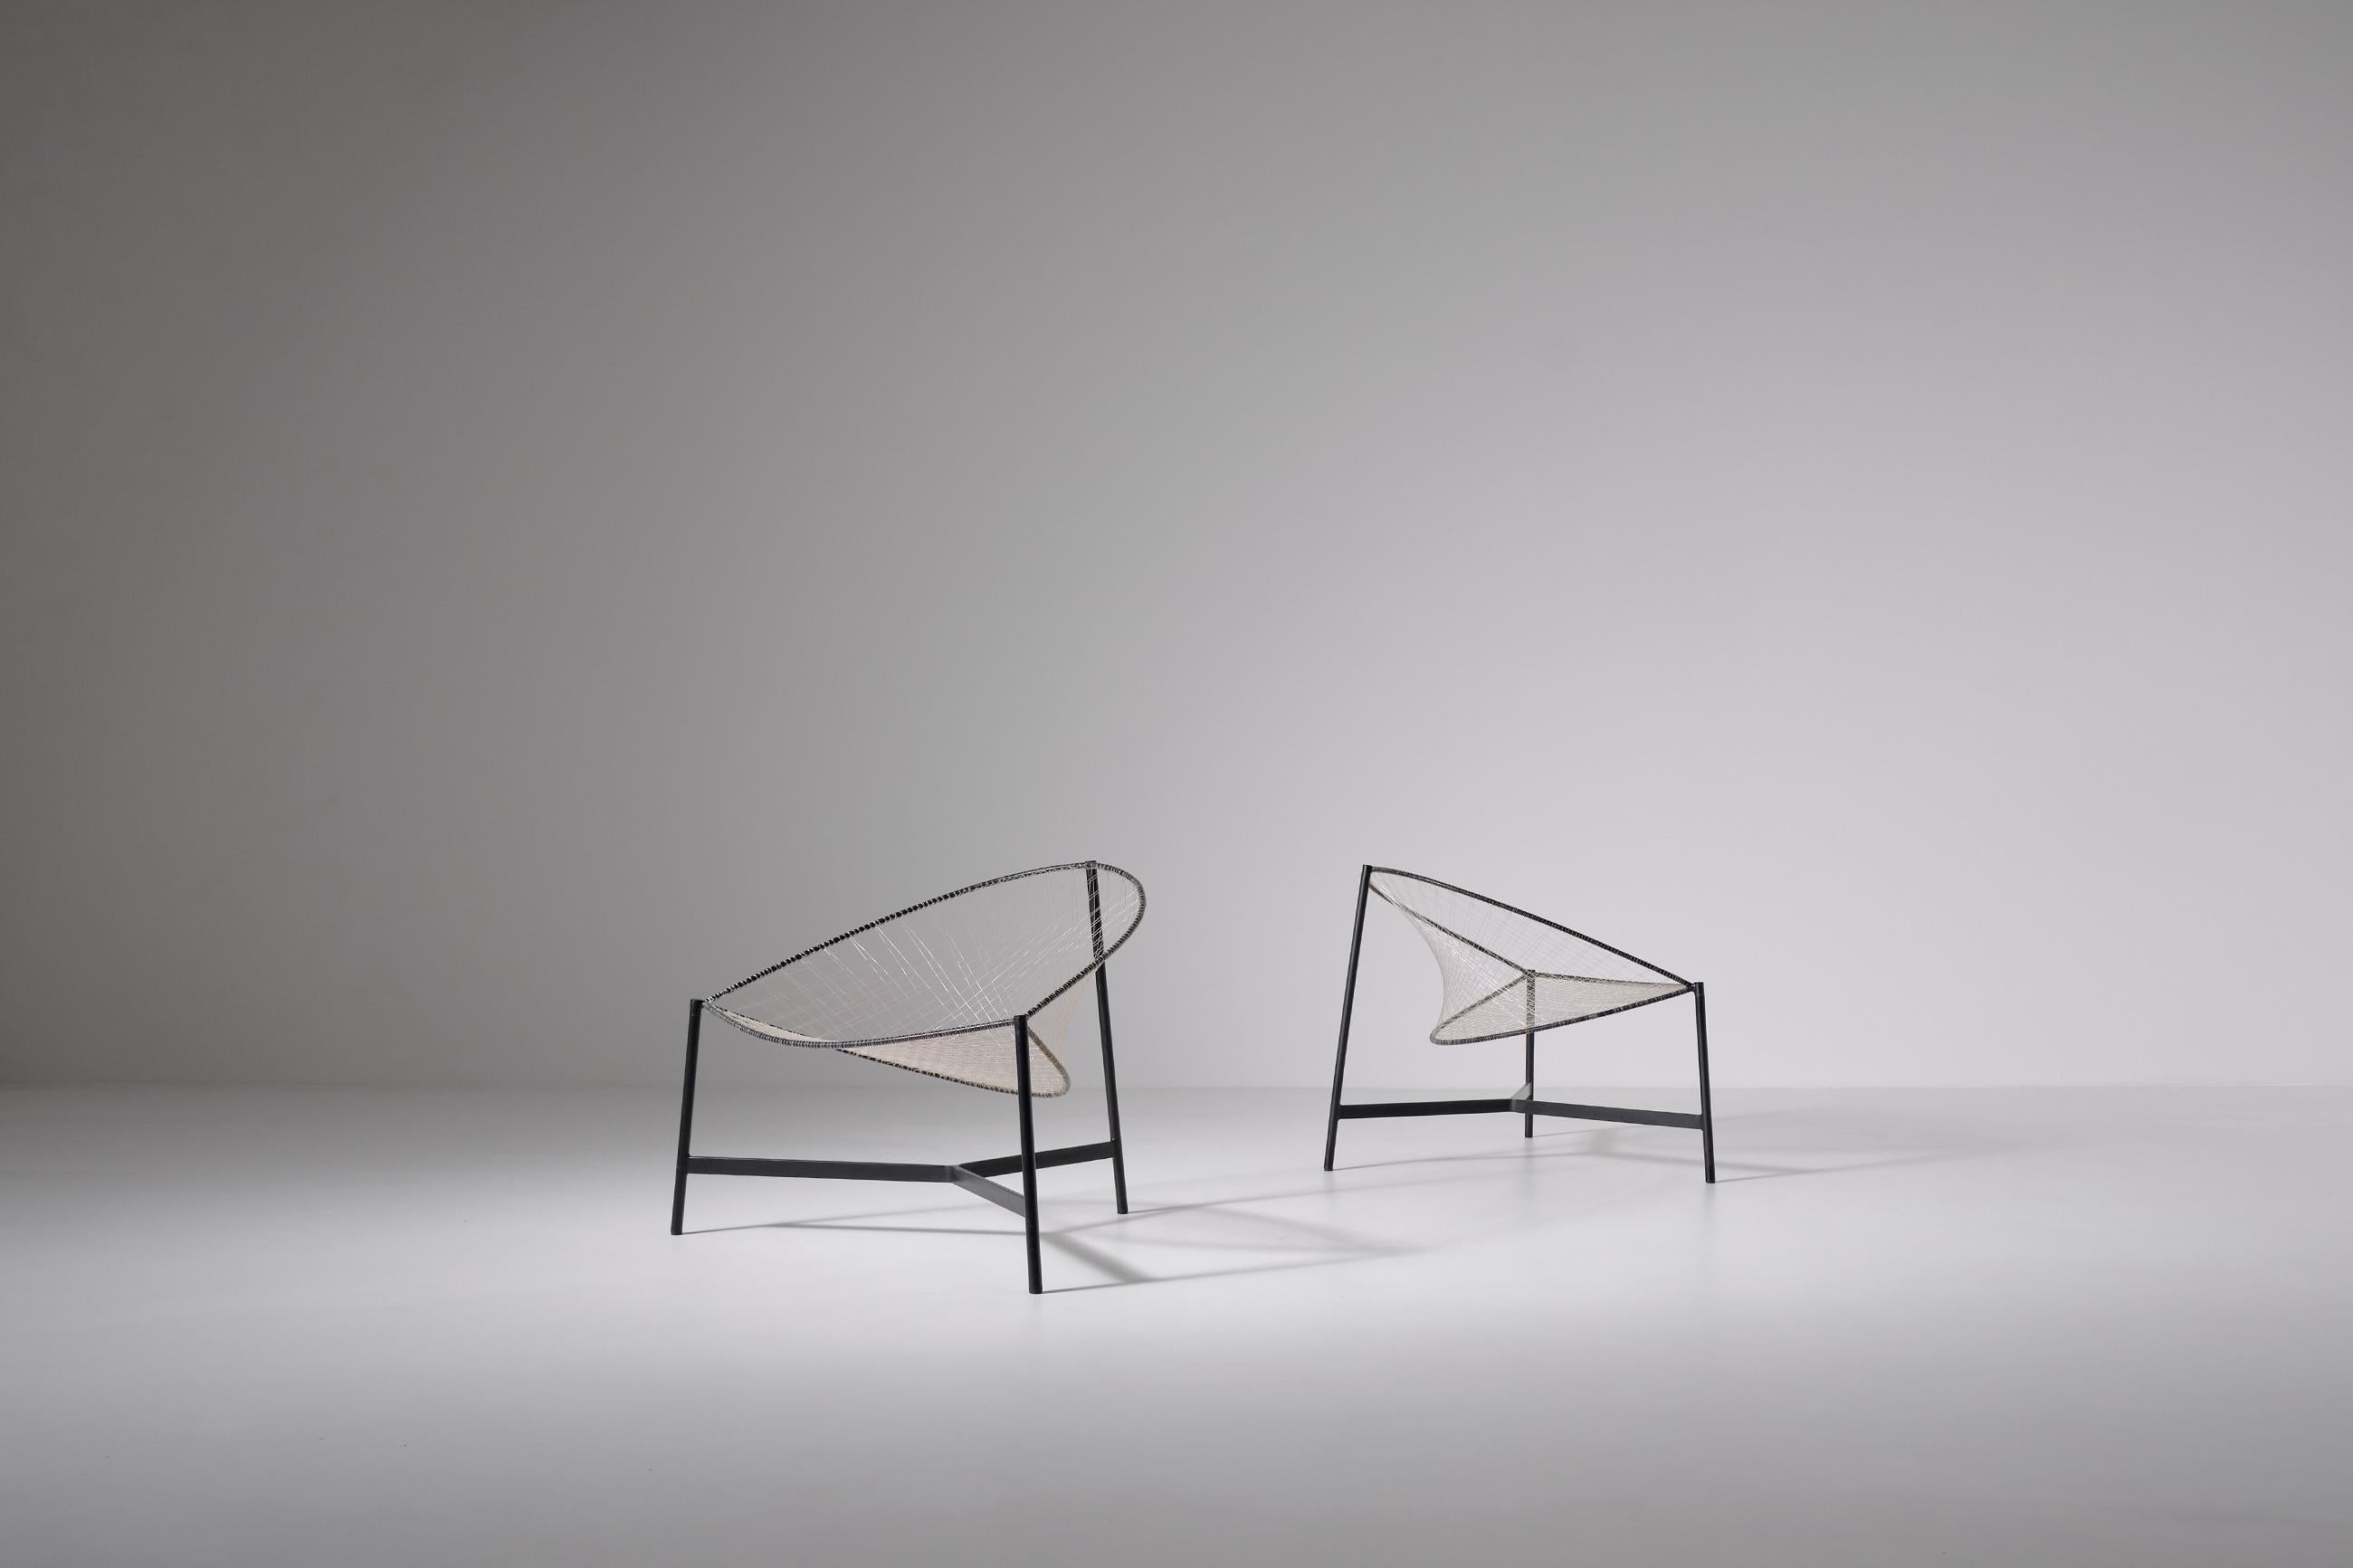 Nylon ‘Cesto’ Chairs by Grassi, Conti and Forlani for Emilio Paoli, Italy Ca. 1959